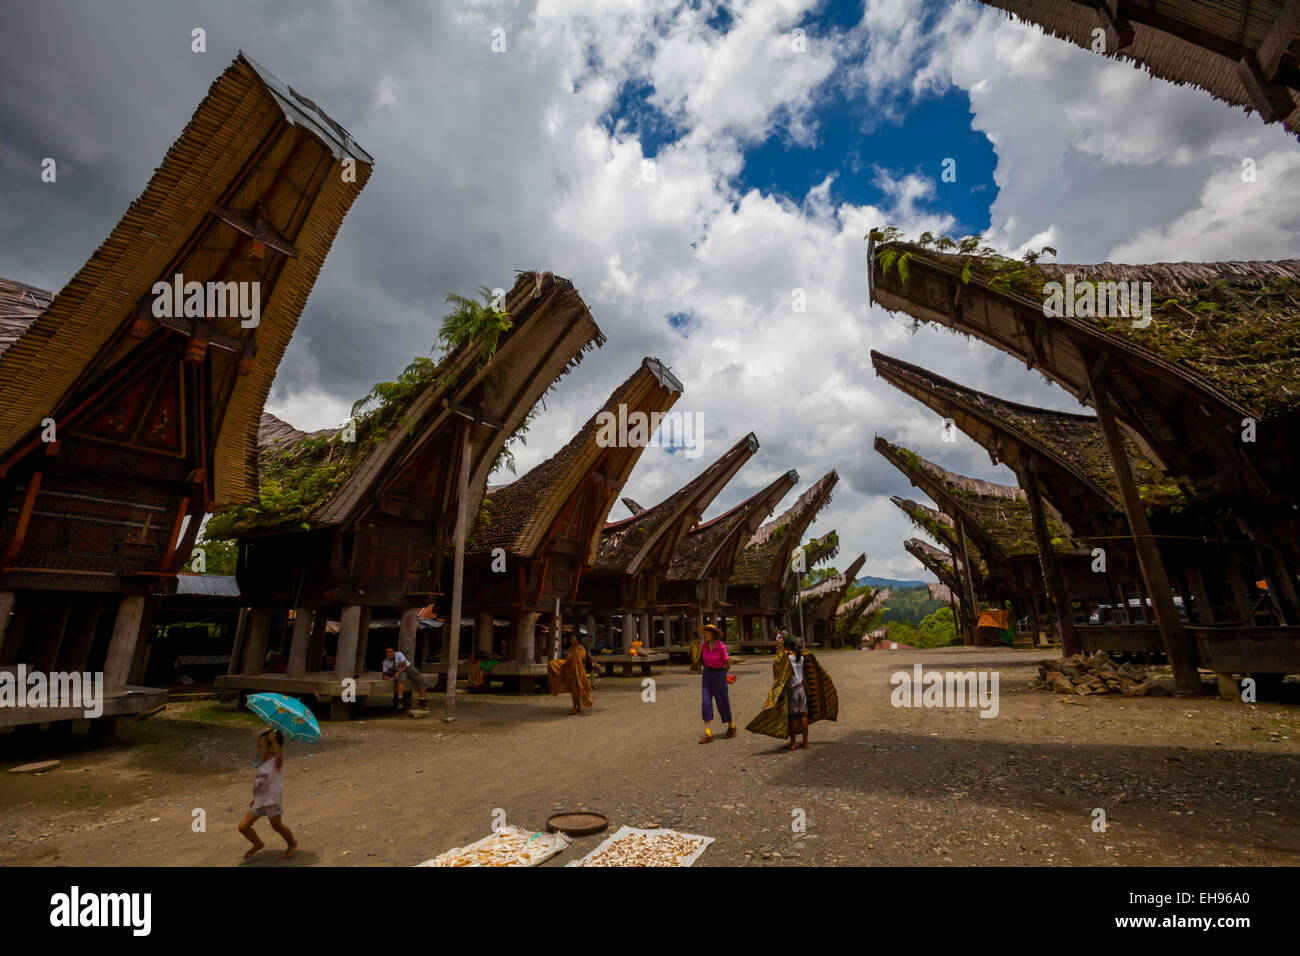 Maisons traditionnelles de Toraja (tongkonan) dans le village touristique de Palawa, Nord de Toraja, Sud Sulawesi, Indonésie. Banque D'Images